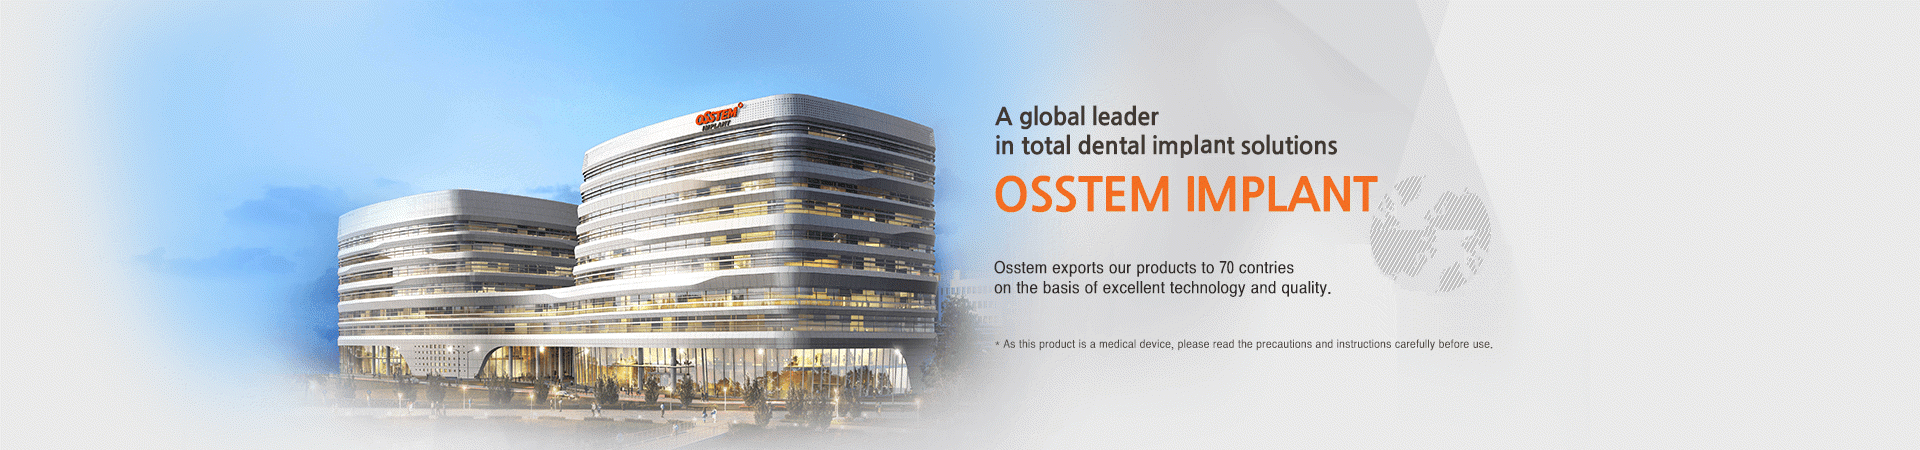 Global Leader - Osstem Implant